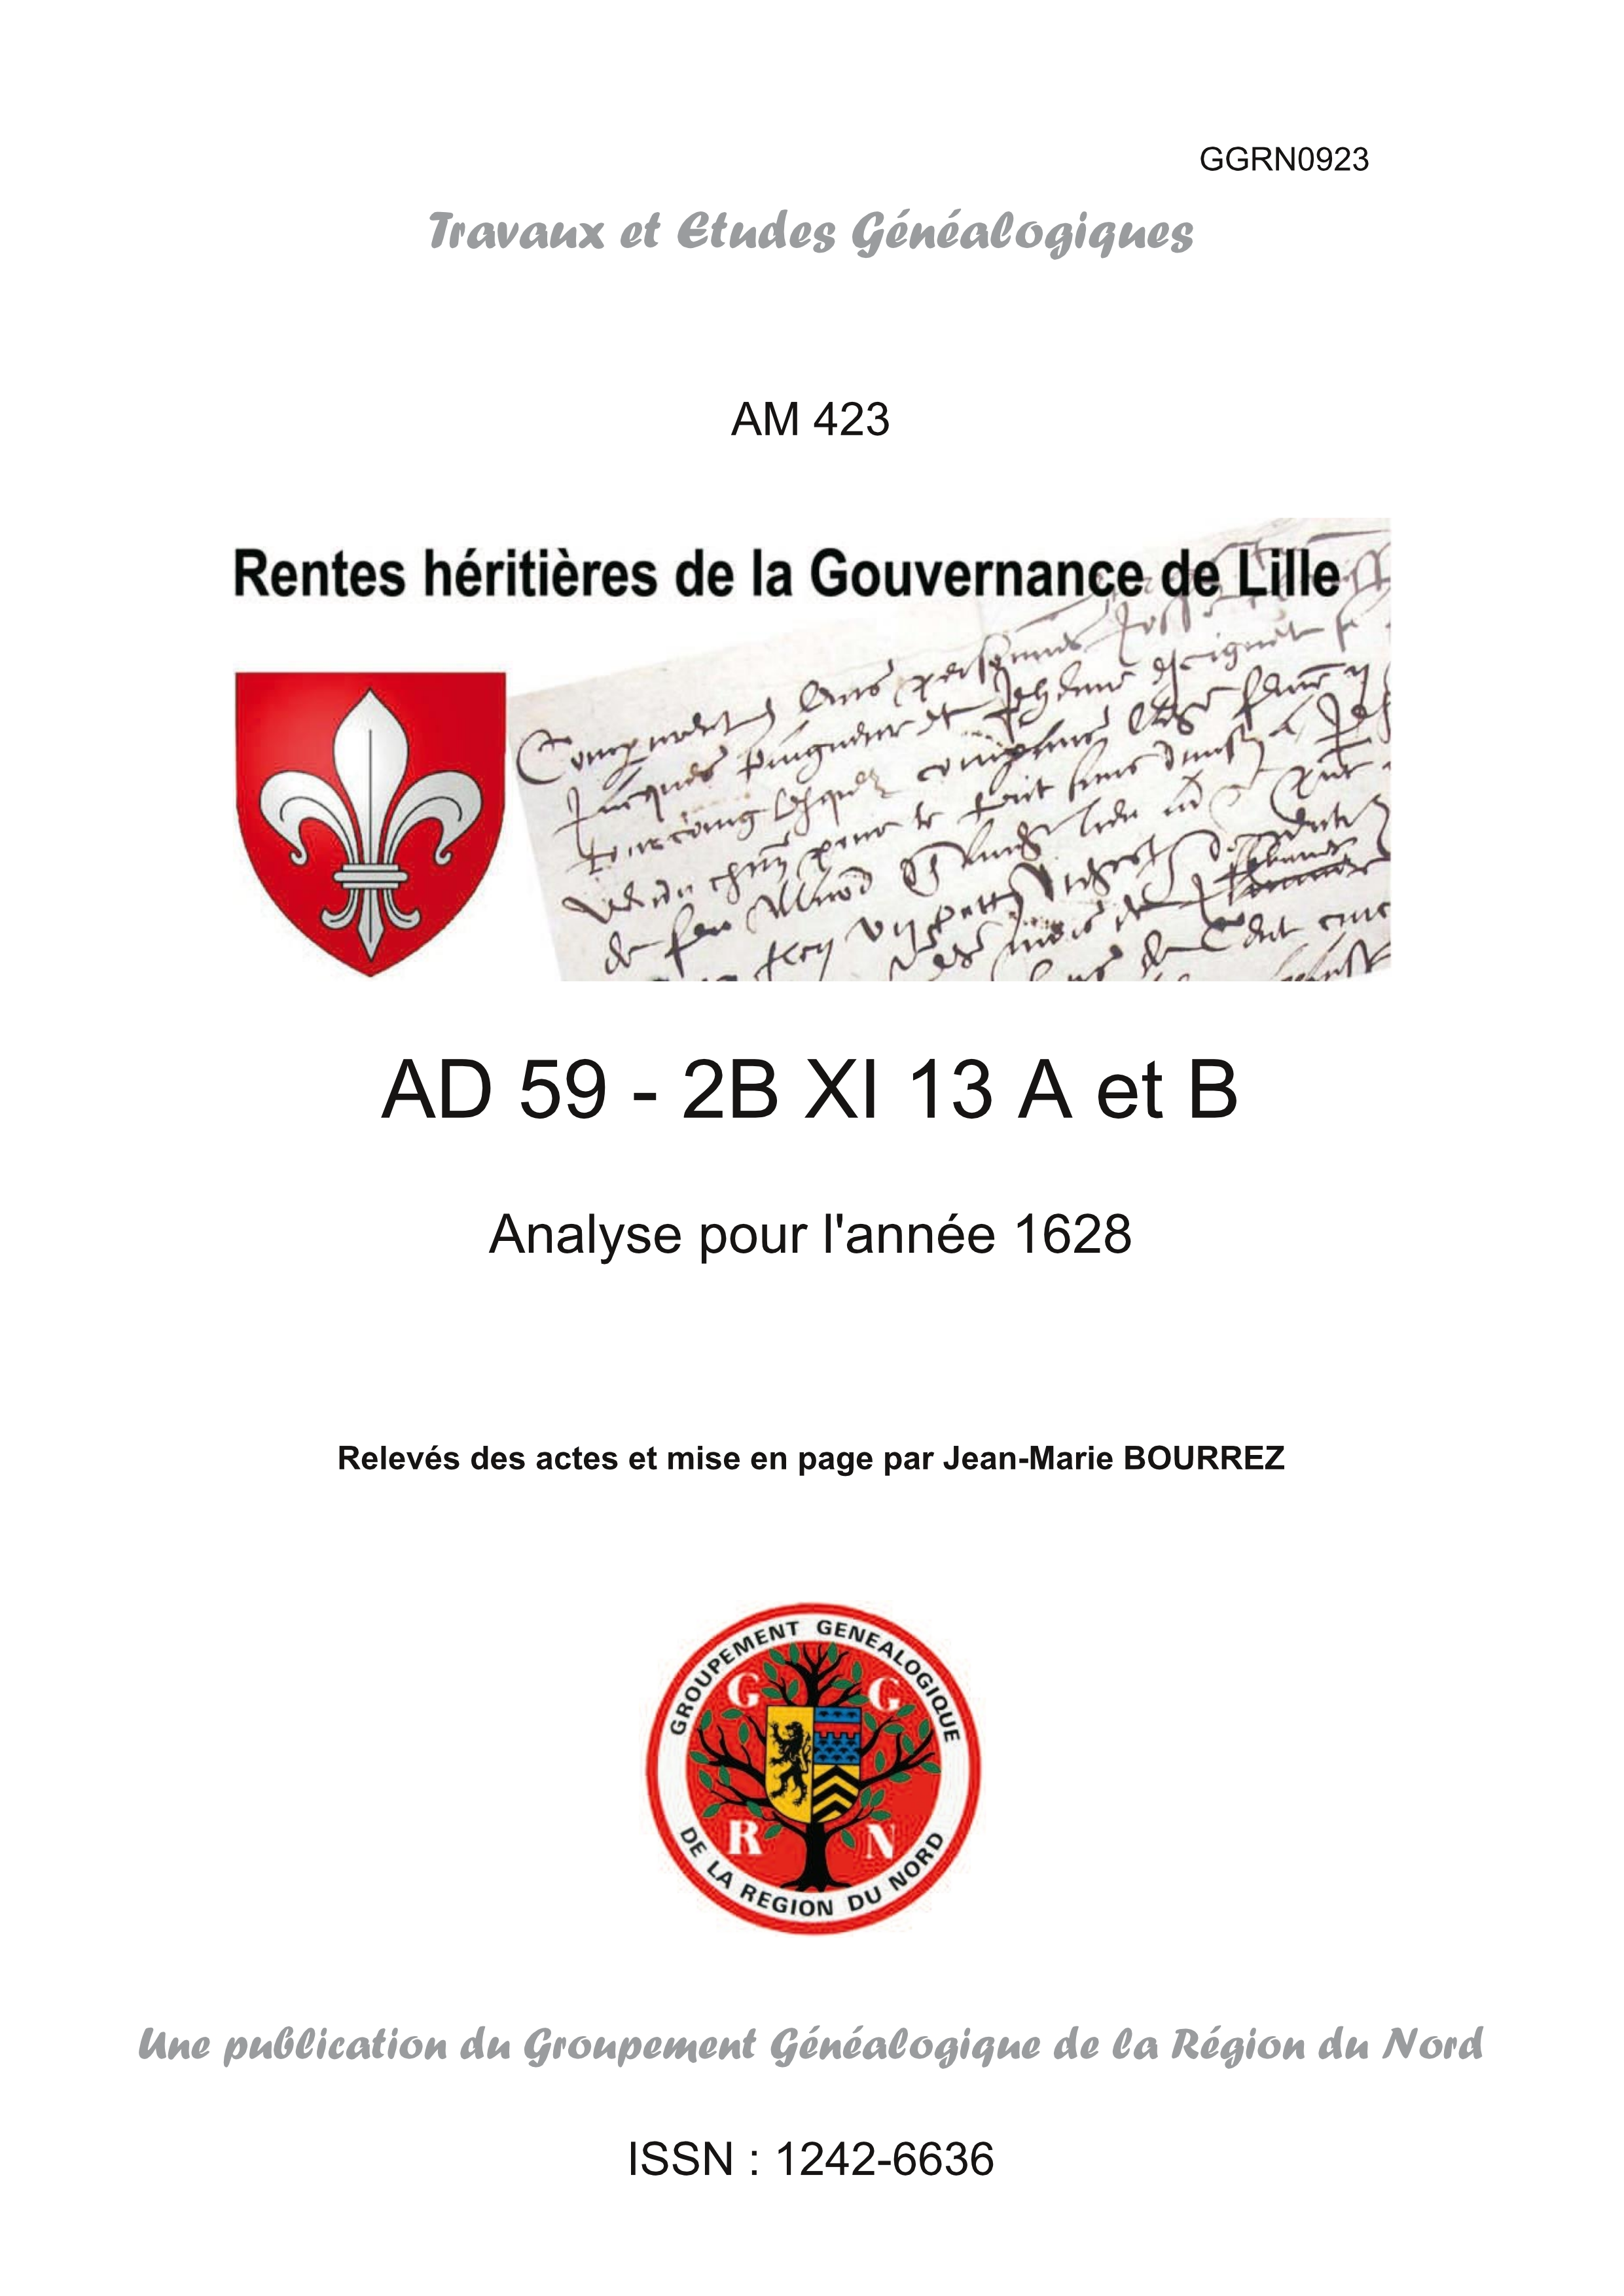 AM423-RENTES HÉRITIÈRES-2BXI13-1628